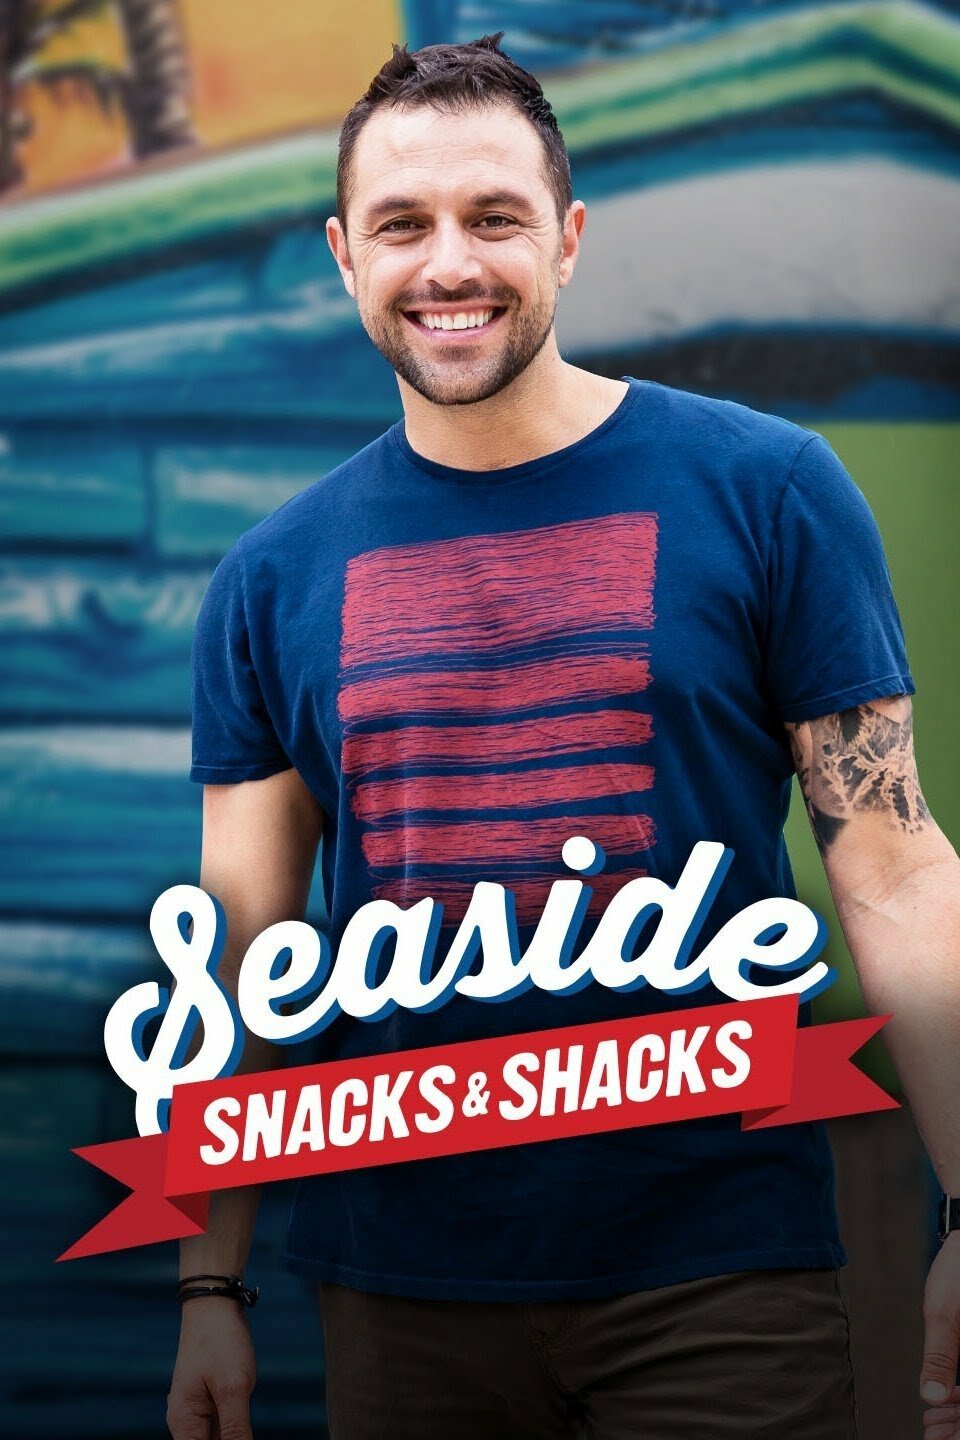 Seaside Snacks & Shacks